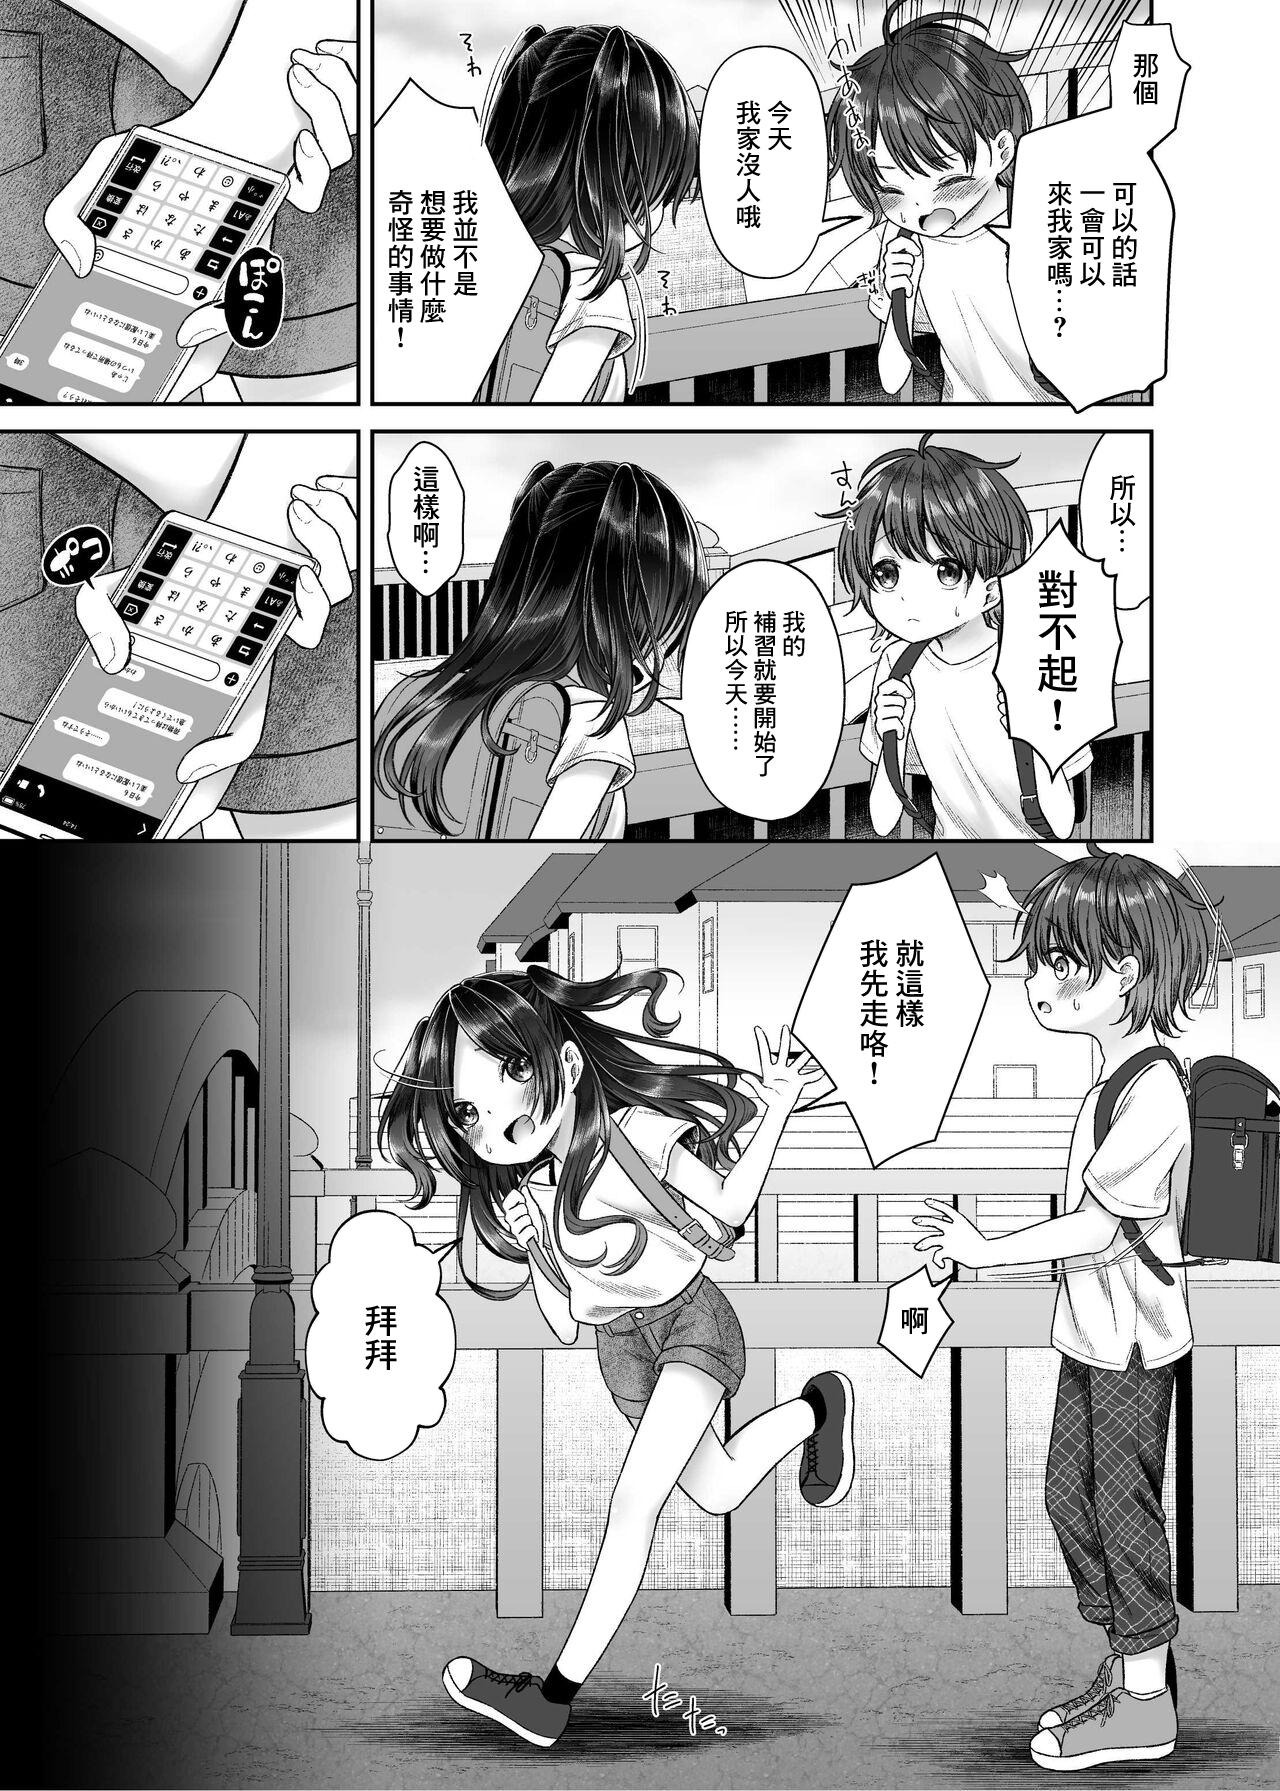 Old Vs Young JS4 NTR Haishin Manga - Original Body Massage - Page 1